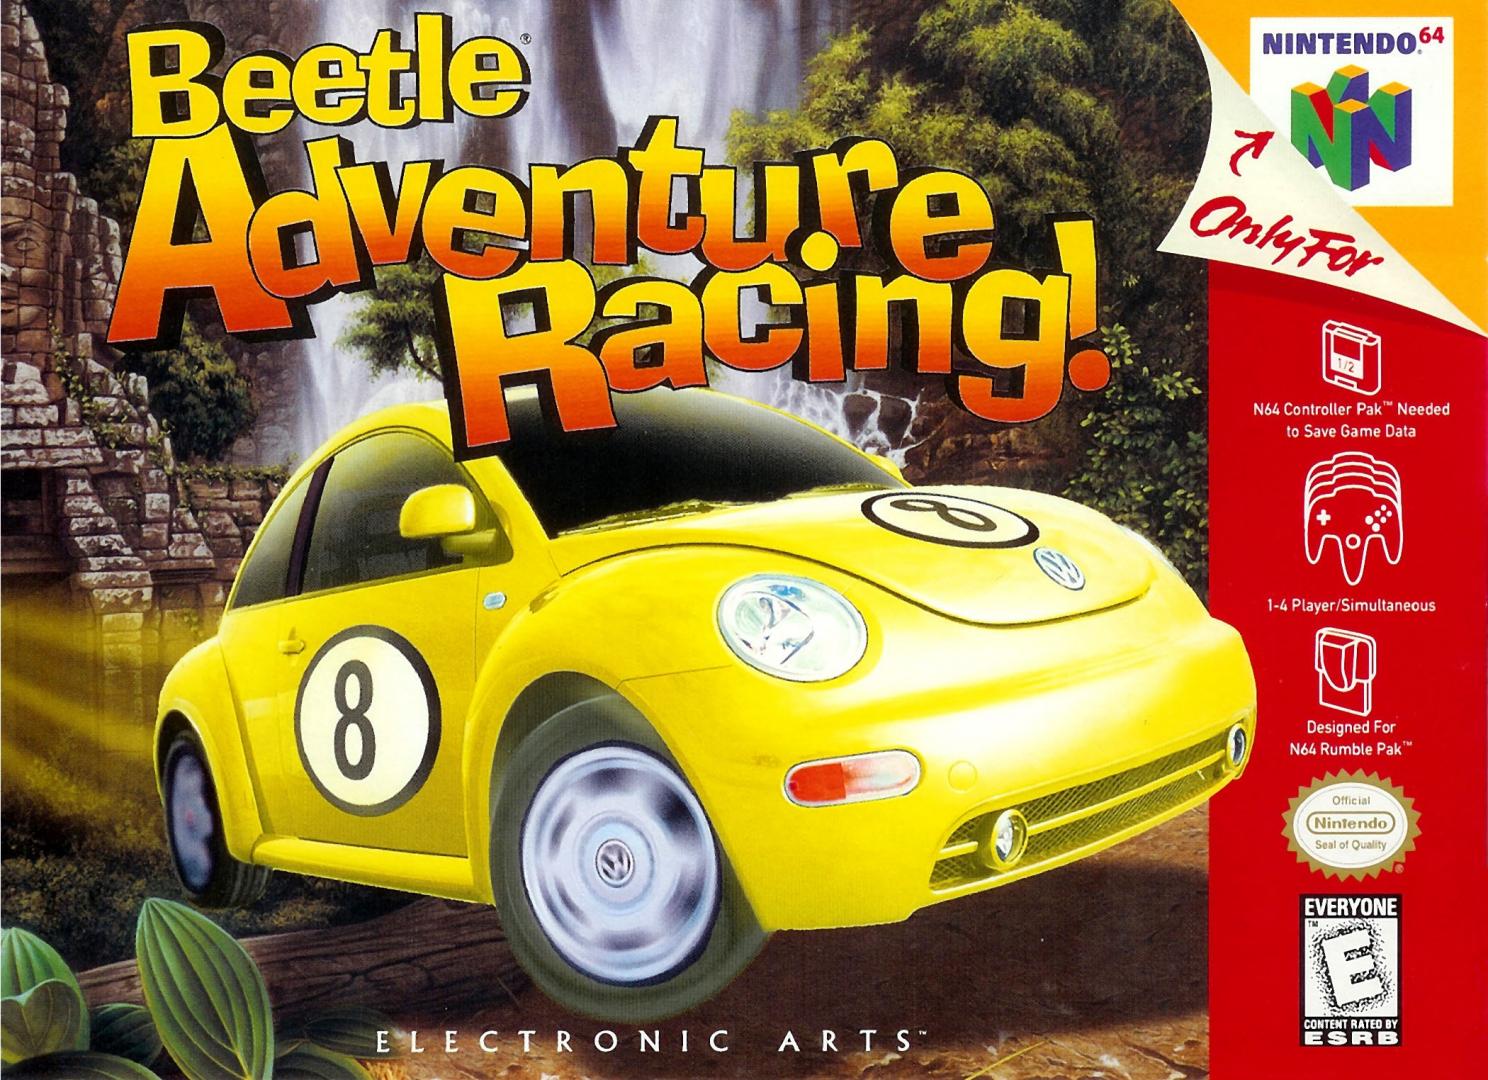 n64_beetle_adventure_racing_p_om1hy2